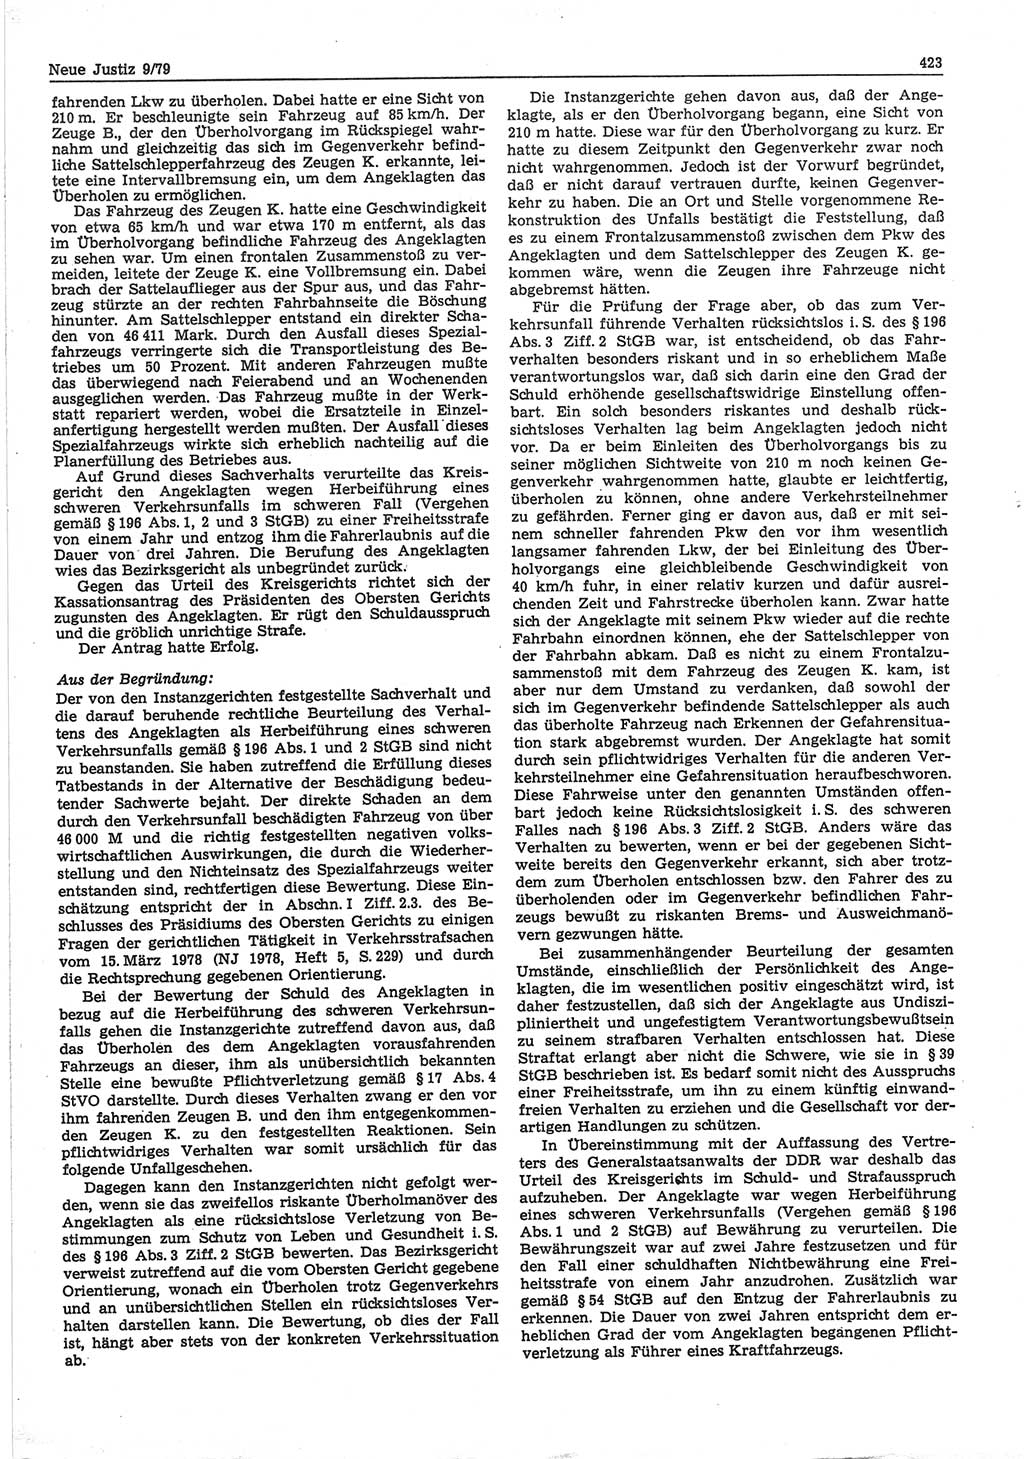 Neue Justiz (NJ), Zeitschrift für sozialistisches Recht und Gesetzlichkeit [Deutsche Demokratische Republik (DDR)], 33. Jahrgang 1979, Seite 423 (NJ DDR 1979, S. 423)